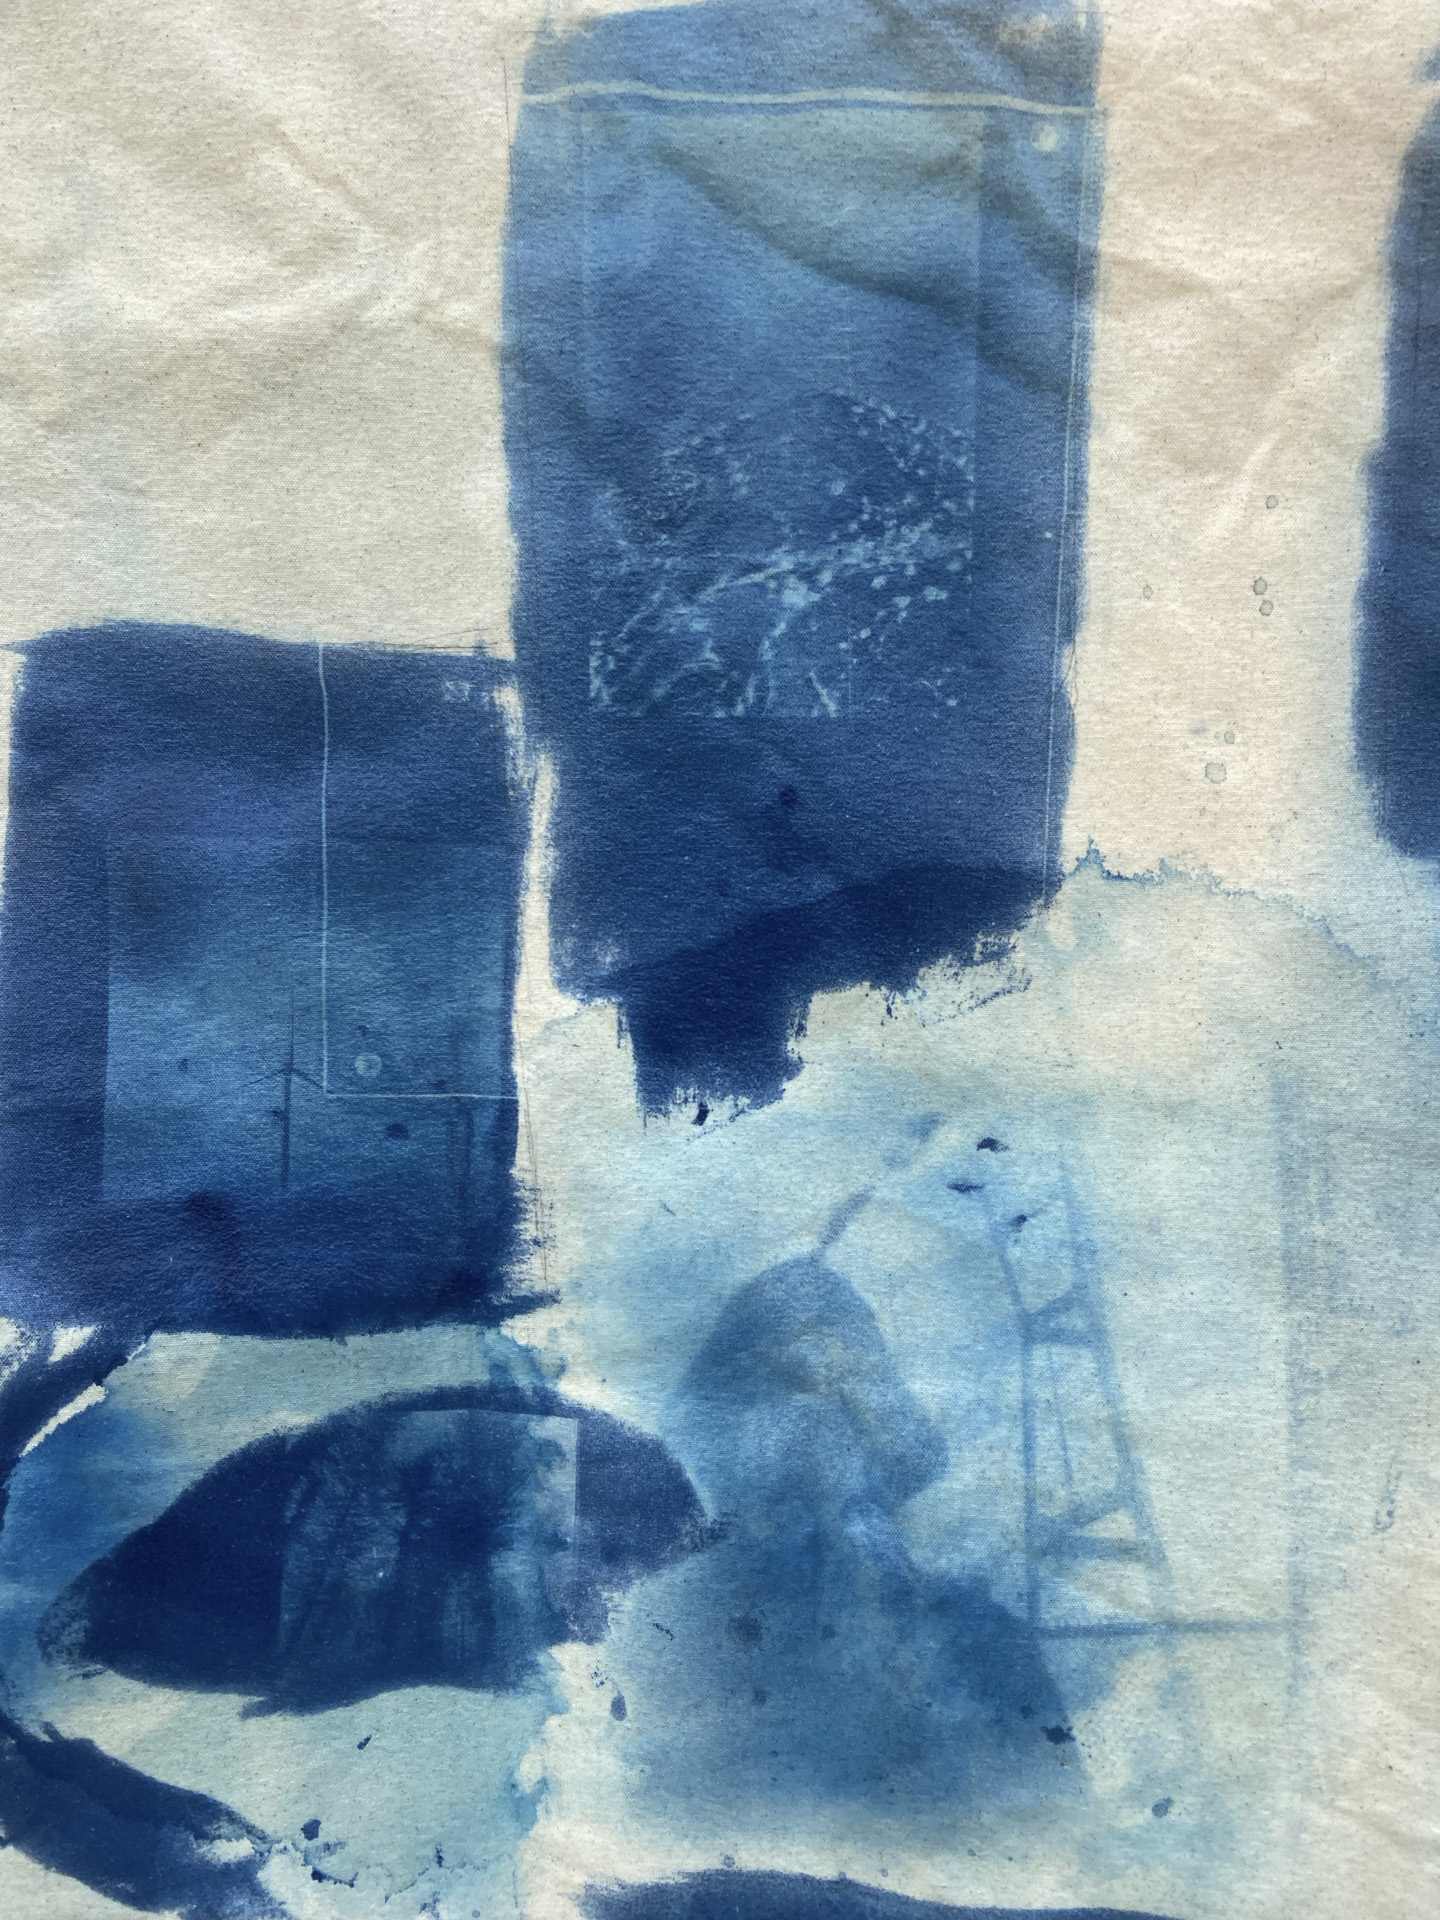 cyanotype abstract photo